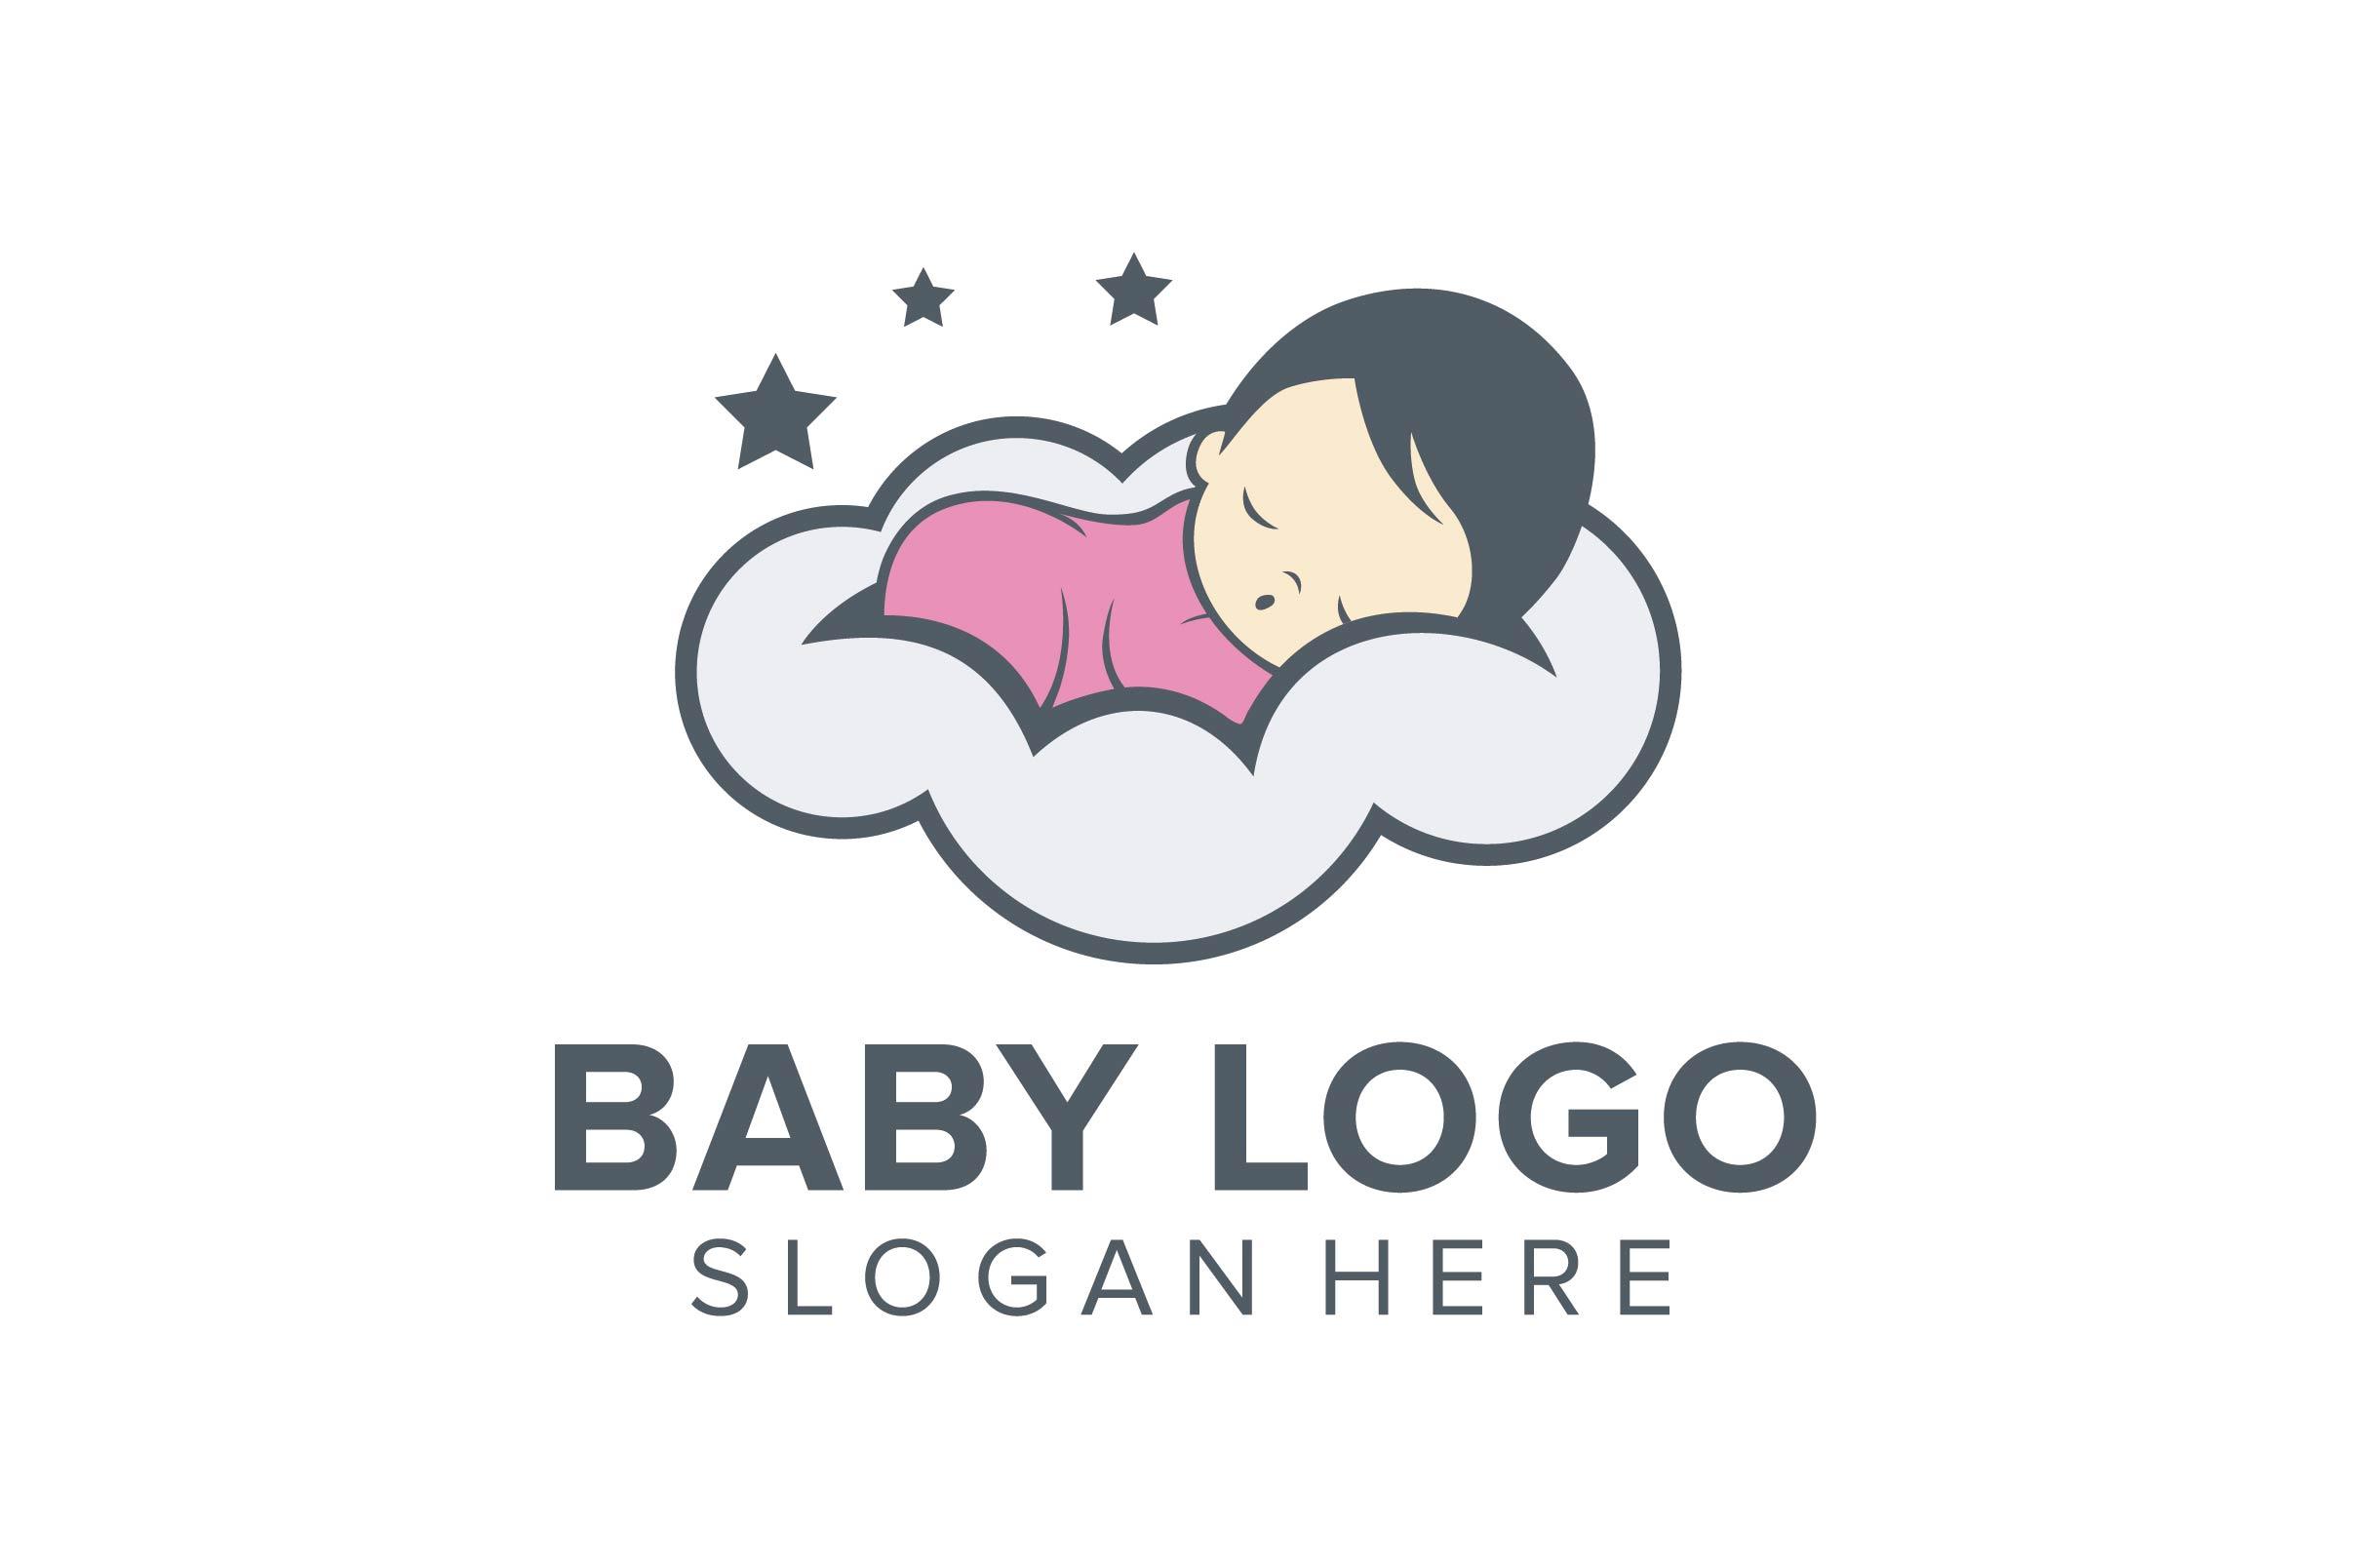 Baby Logo - Baby logo design vector